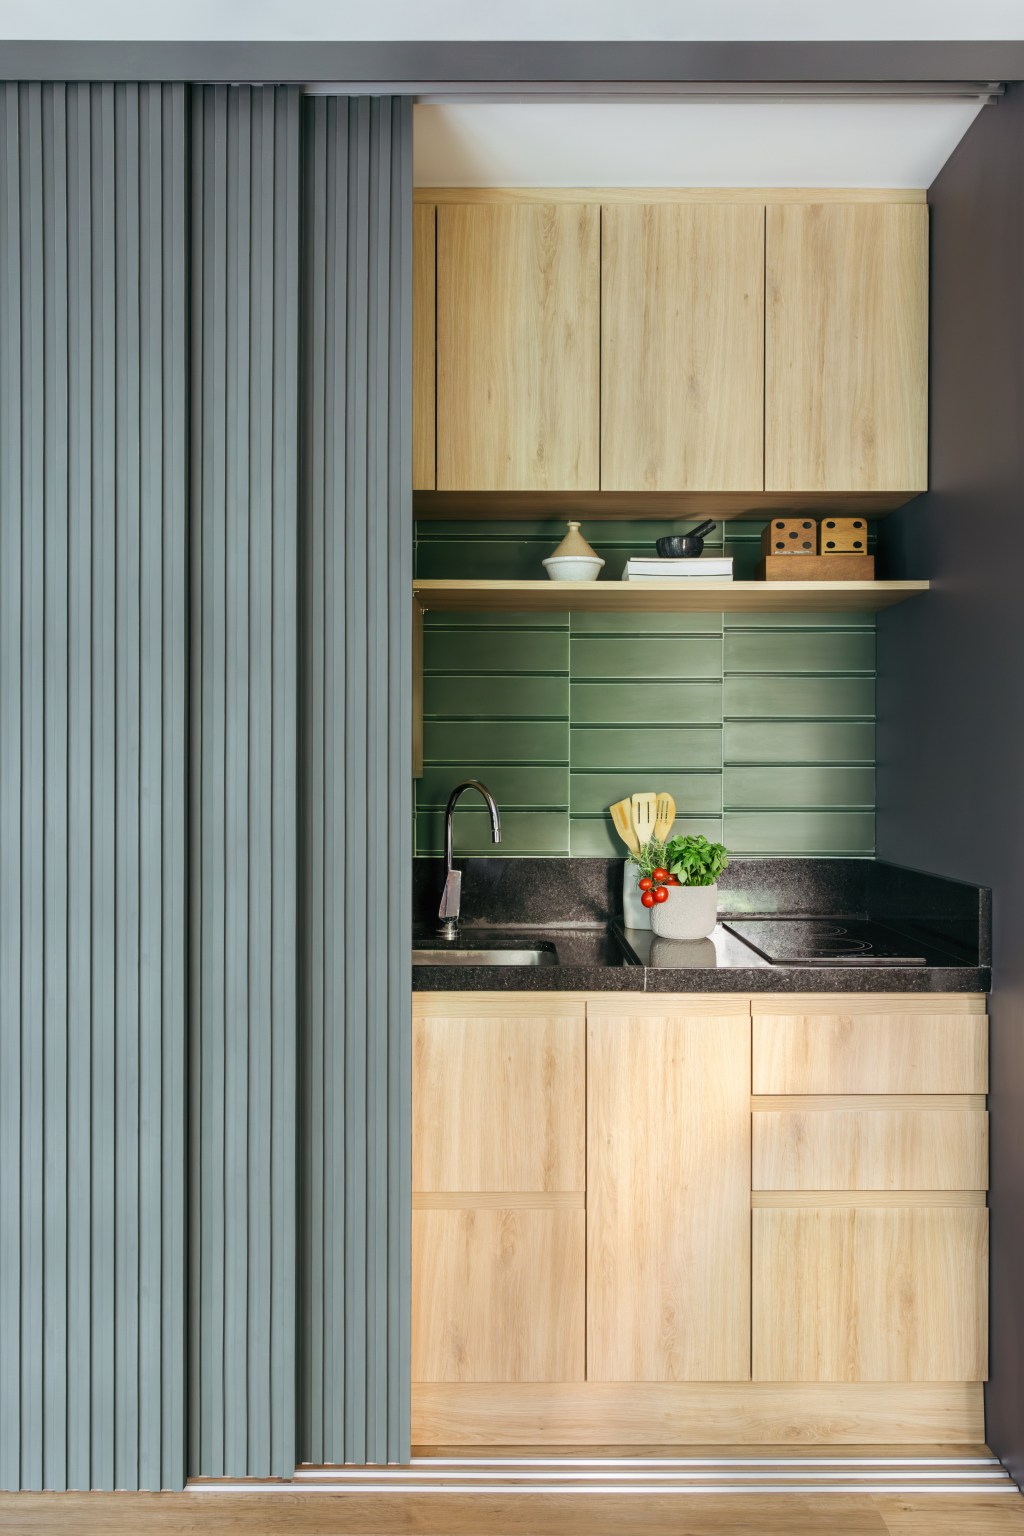 Cozinha se esconde dentro do armário neste apê de 35 m², Projeto de Ikeda Arquitetura. Na foto, cozinha escondida atrás do armário.